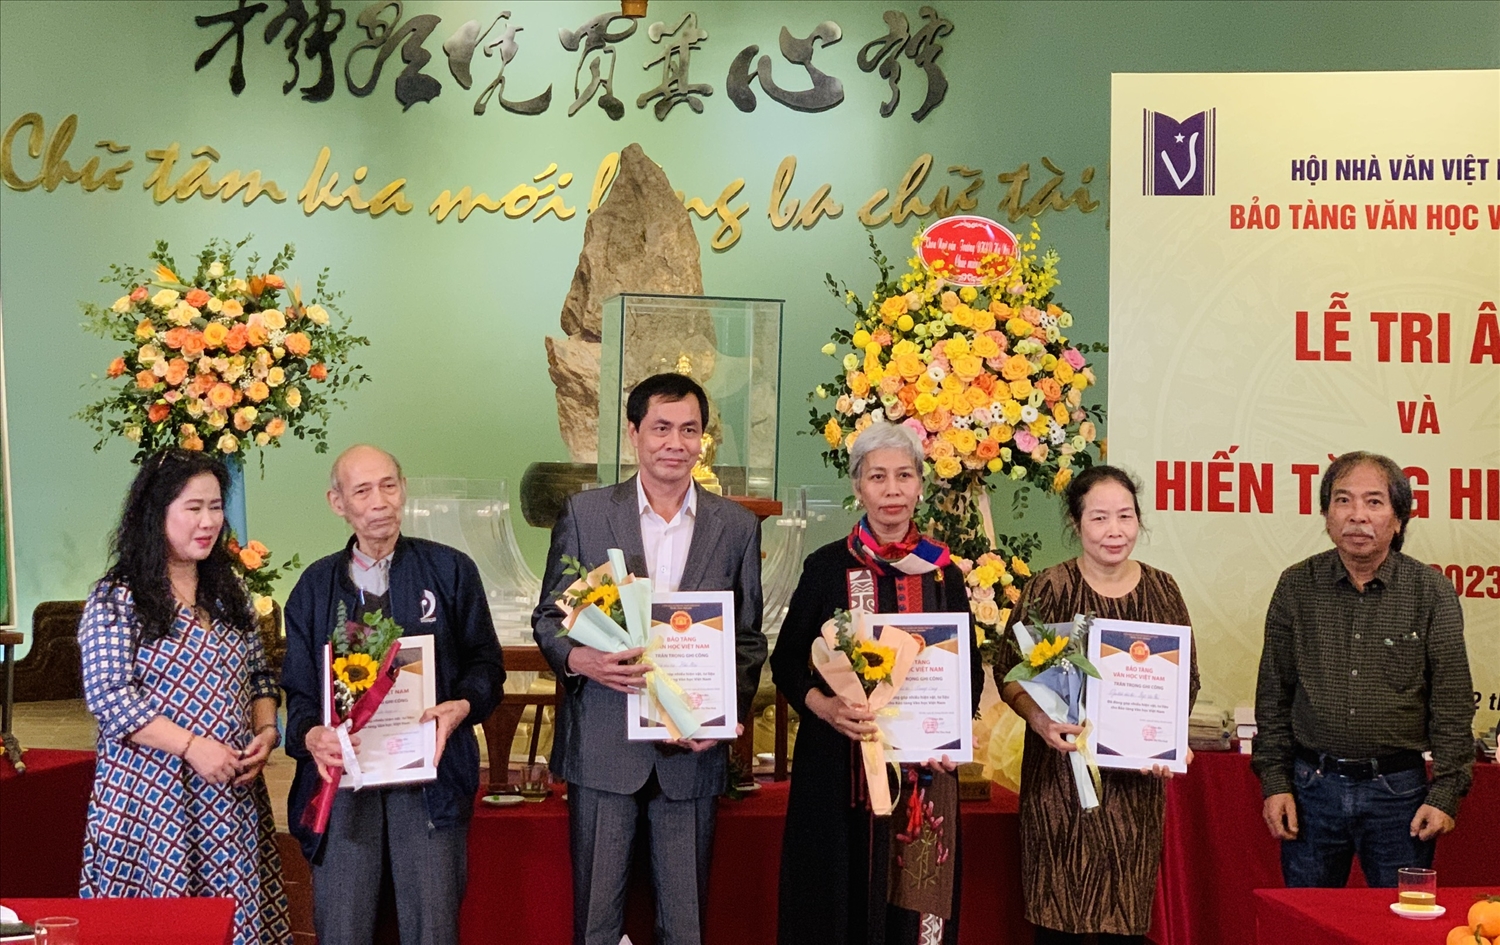 Bảo tàng Văn học Việt Nam tặng hoa tri ân tại buổi lễ